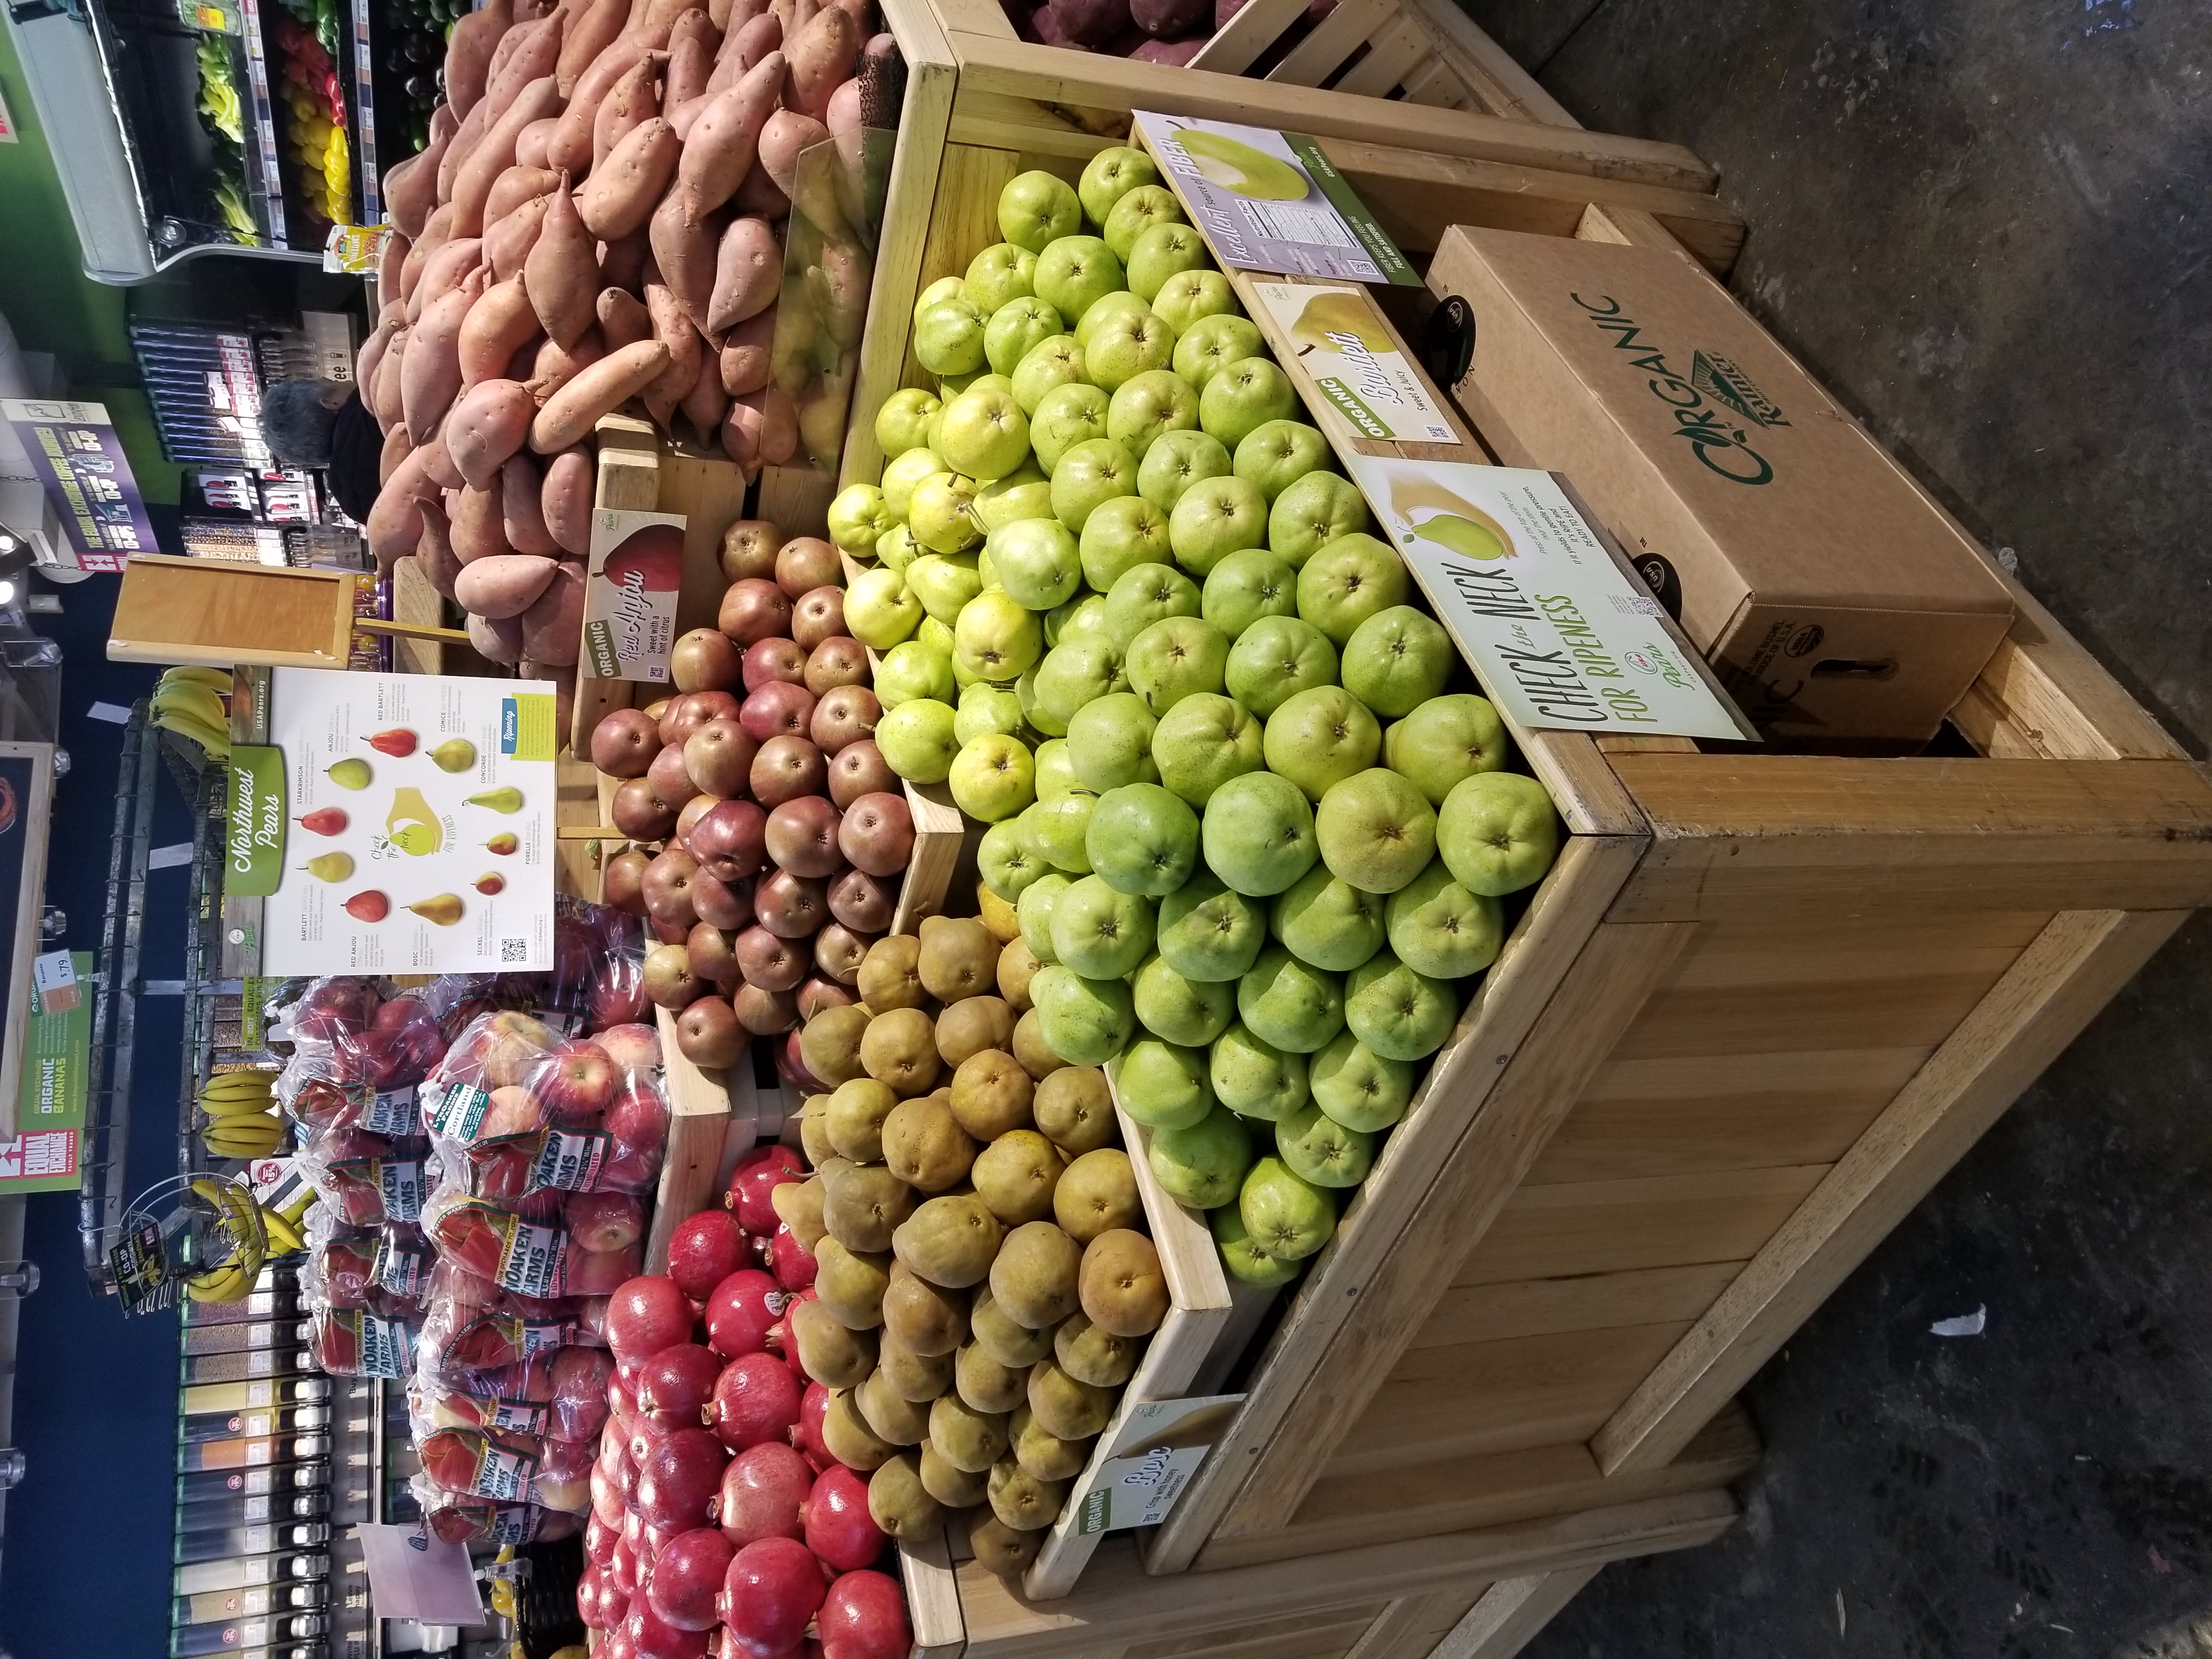 Pear displays